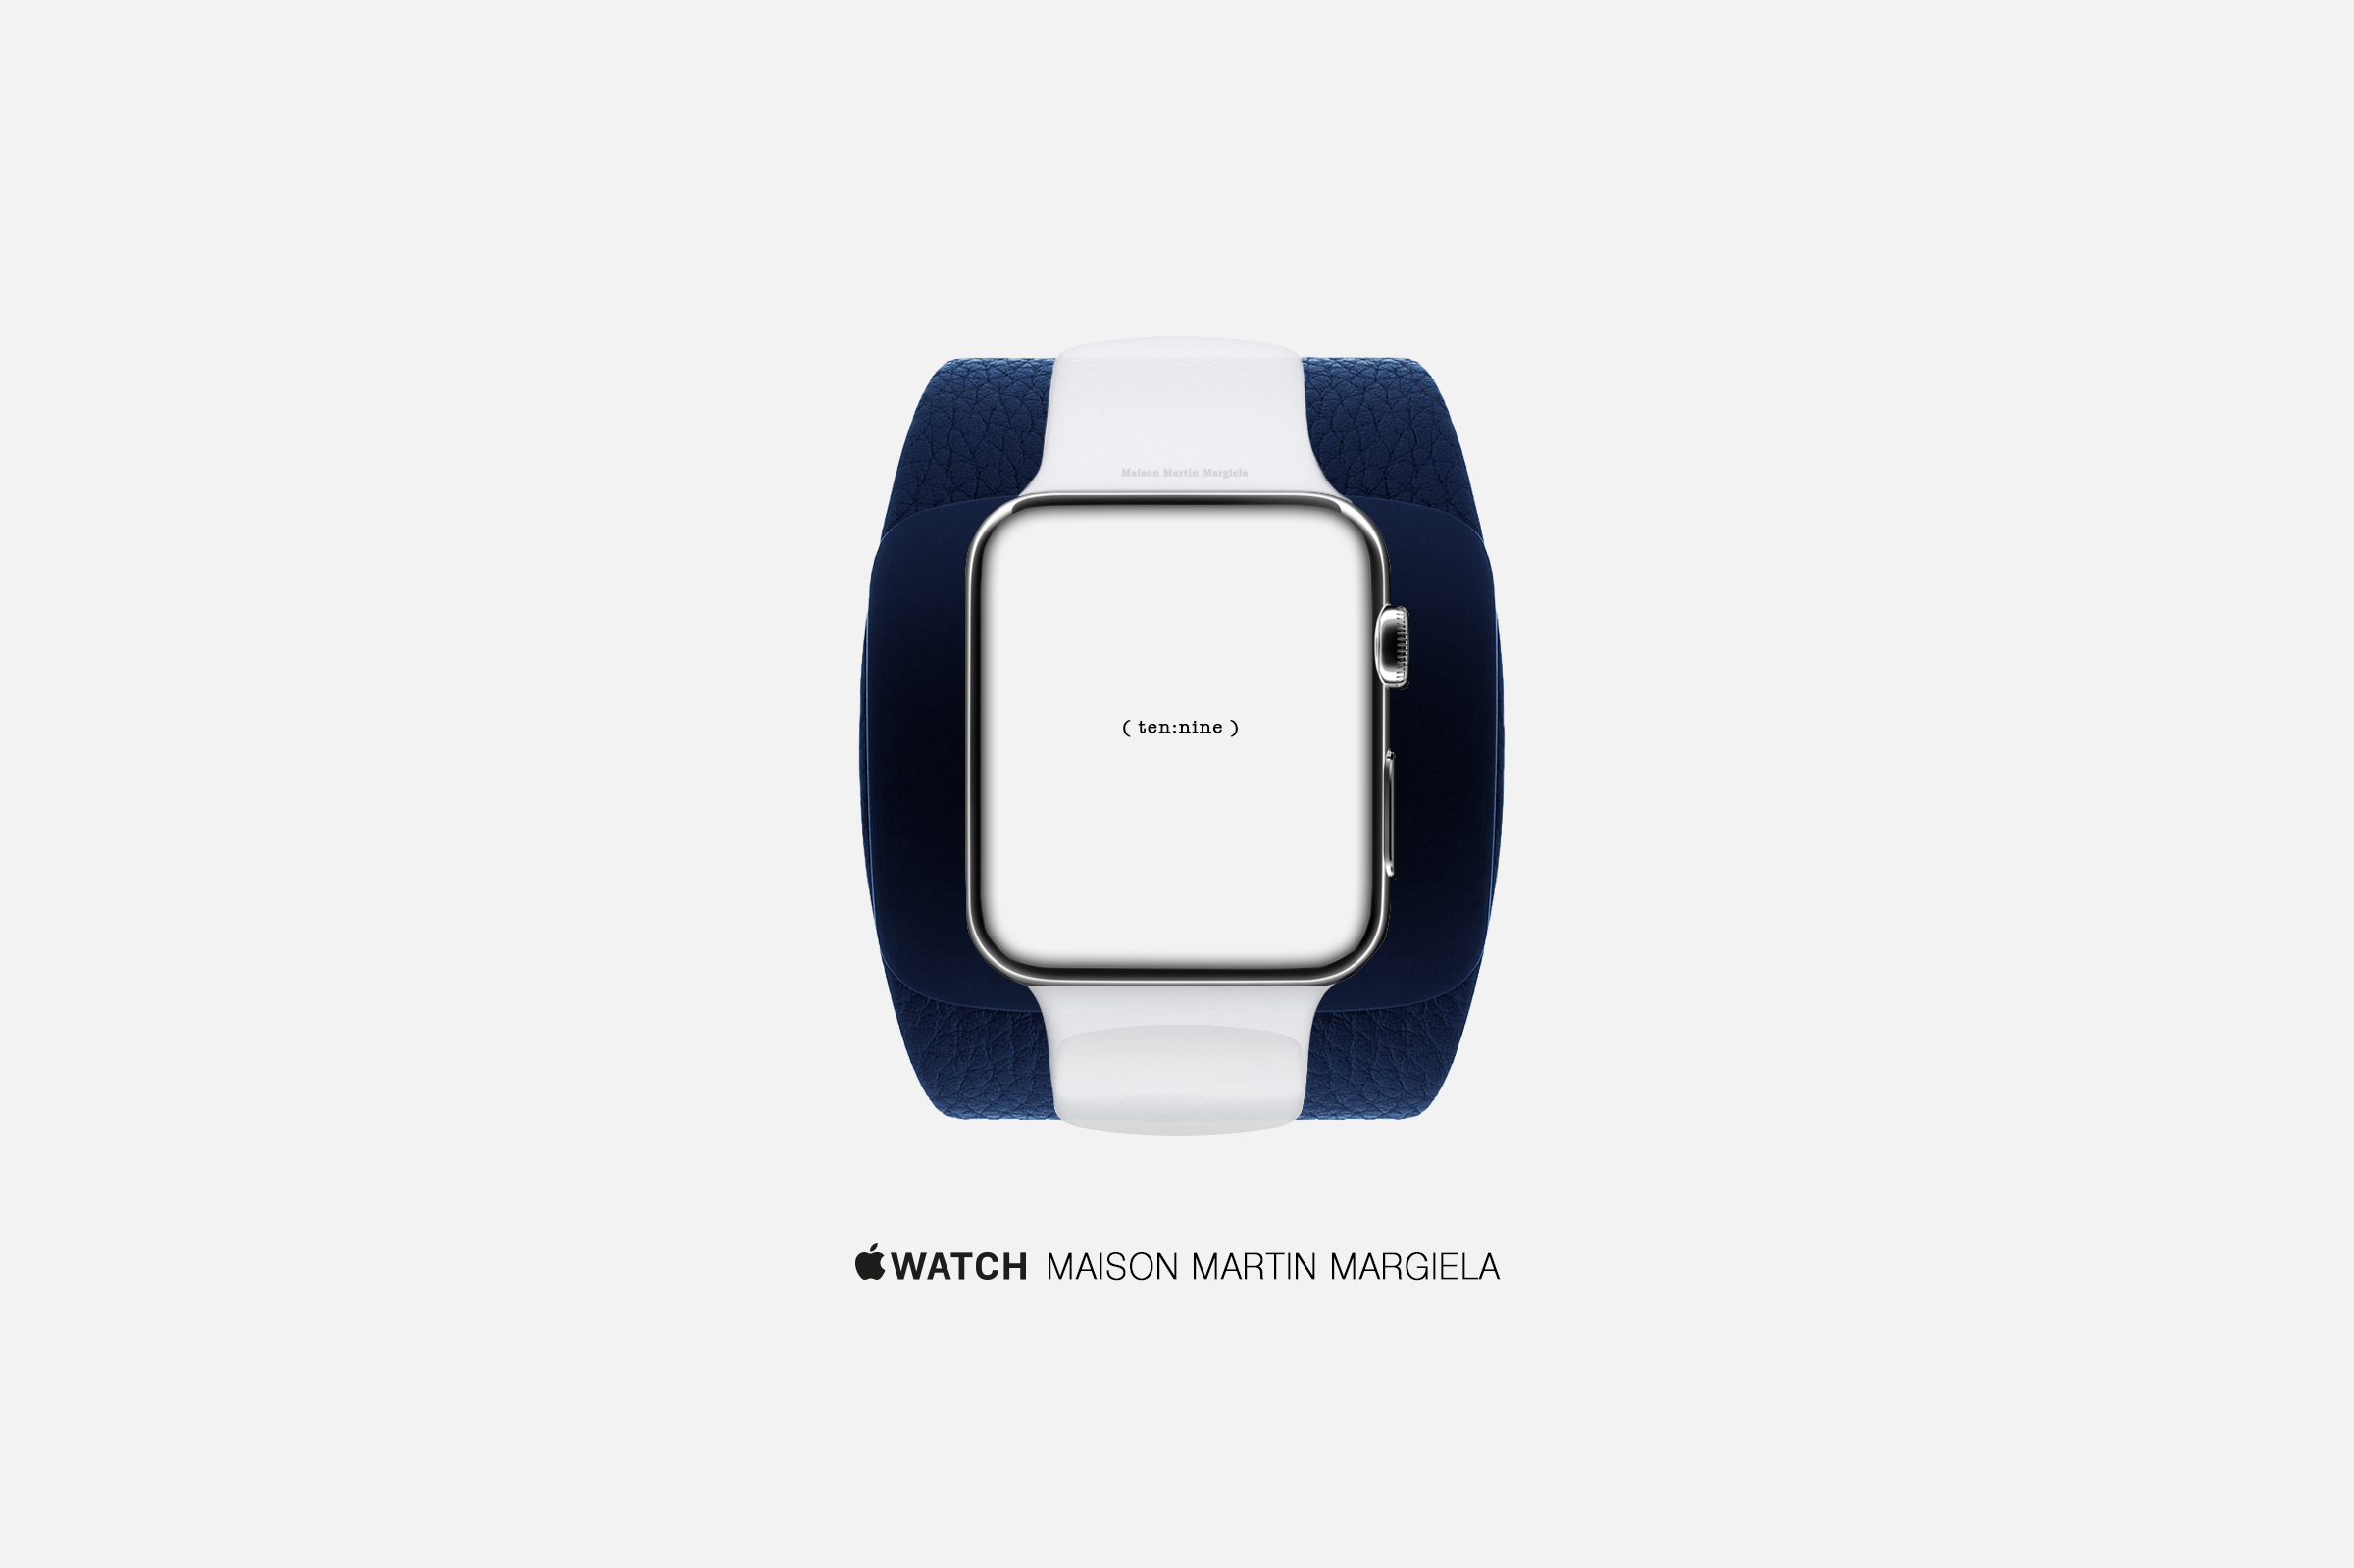 An artist's concept of an Apple Watch by Maison Martin Margiela.